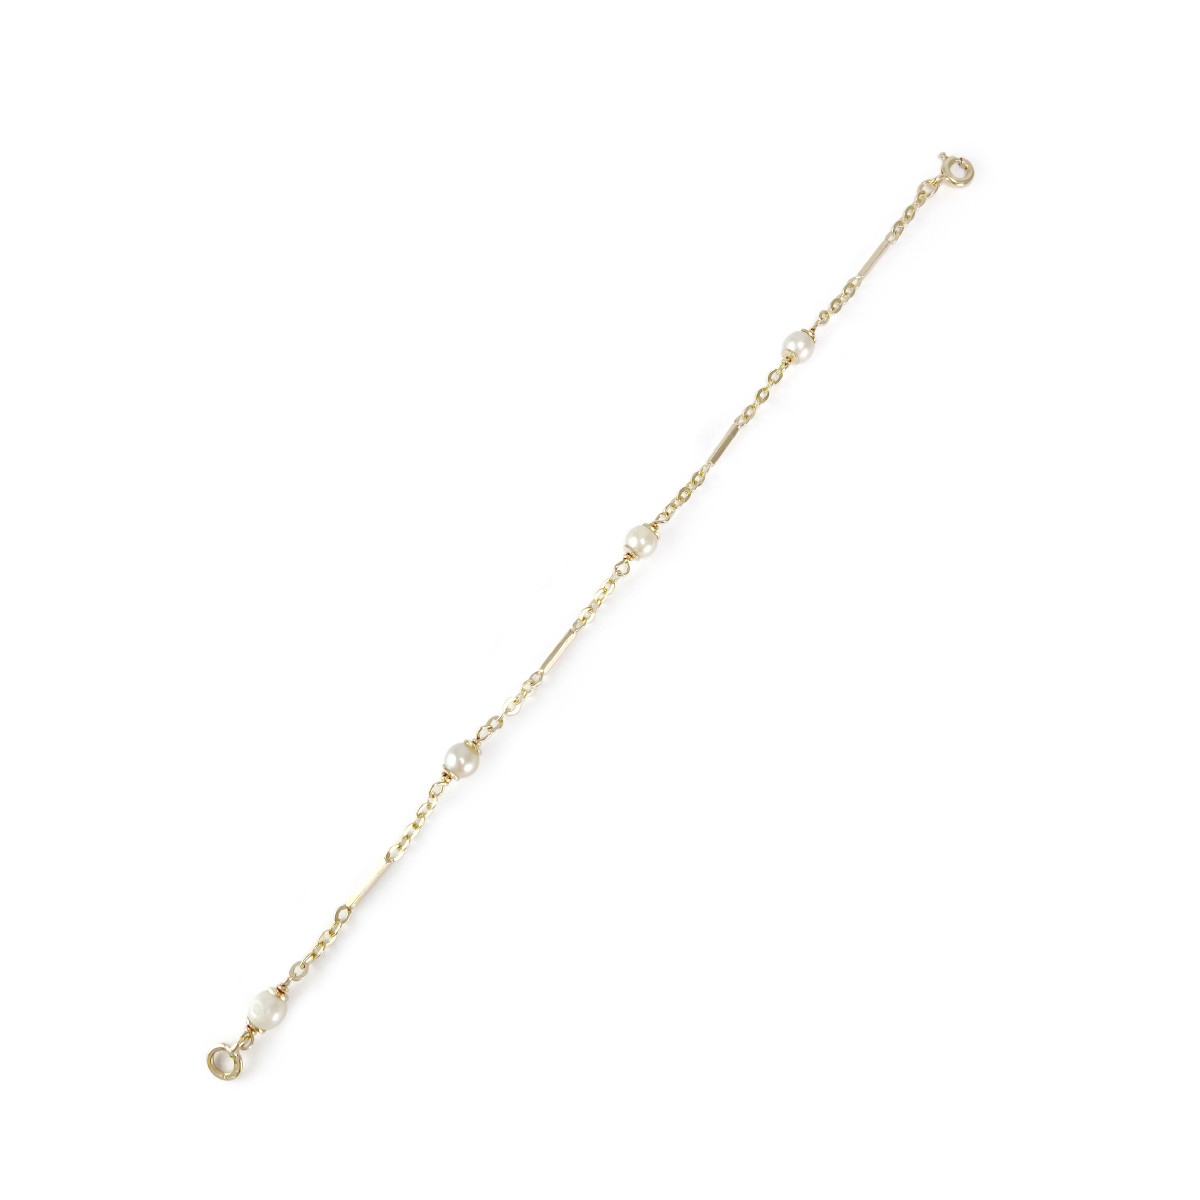 Bracelet d'occasion or 750 jaune perles de culture 19,5 cm - vue 2